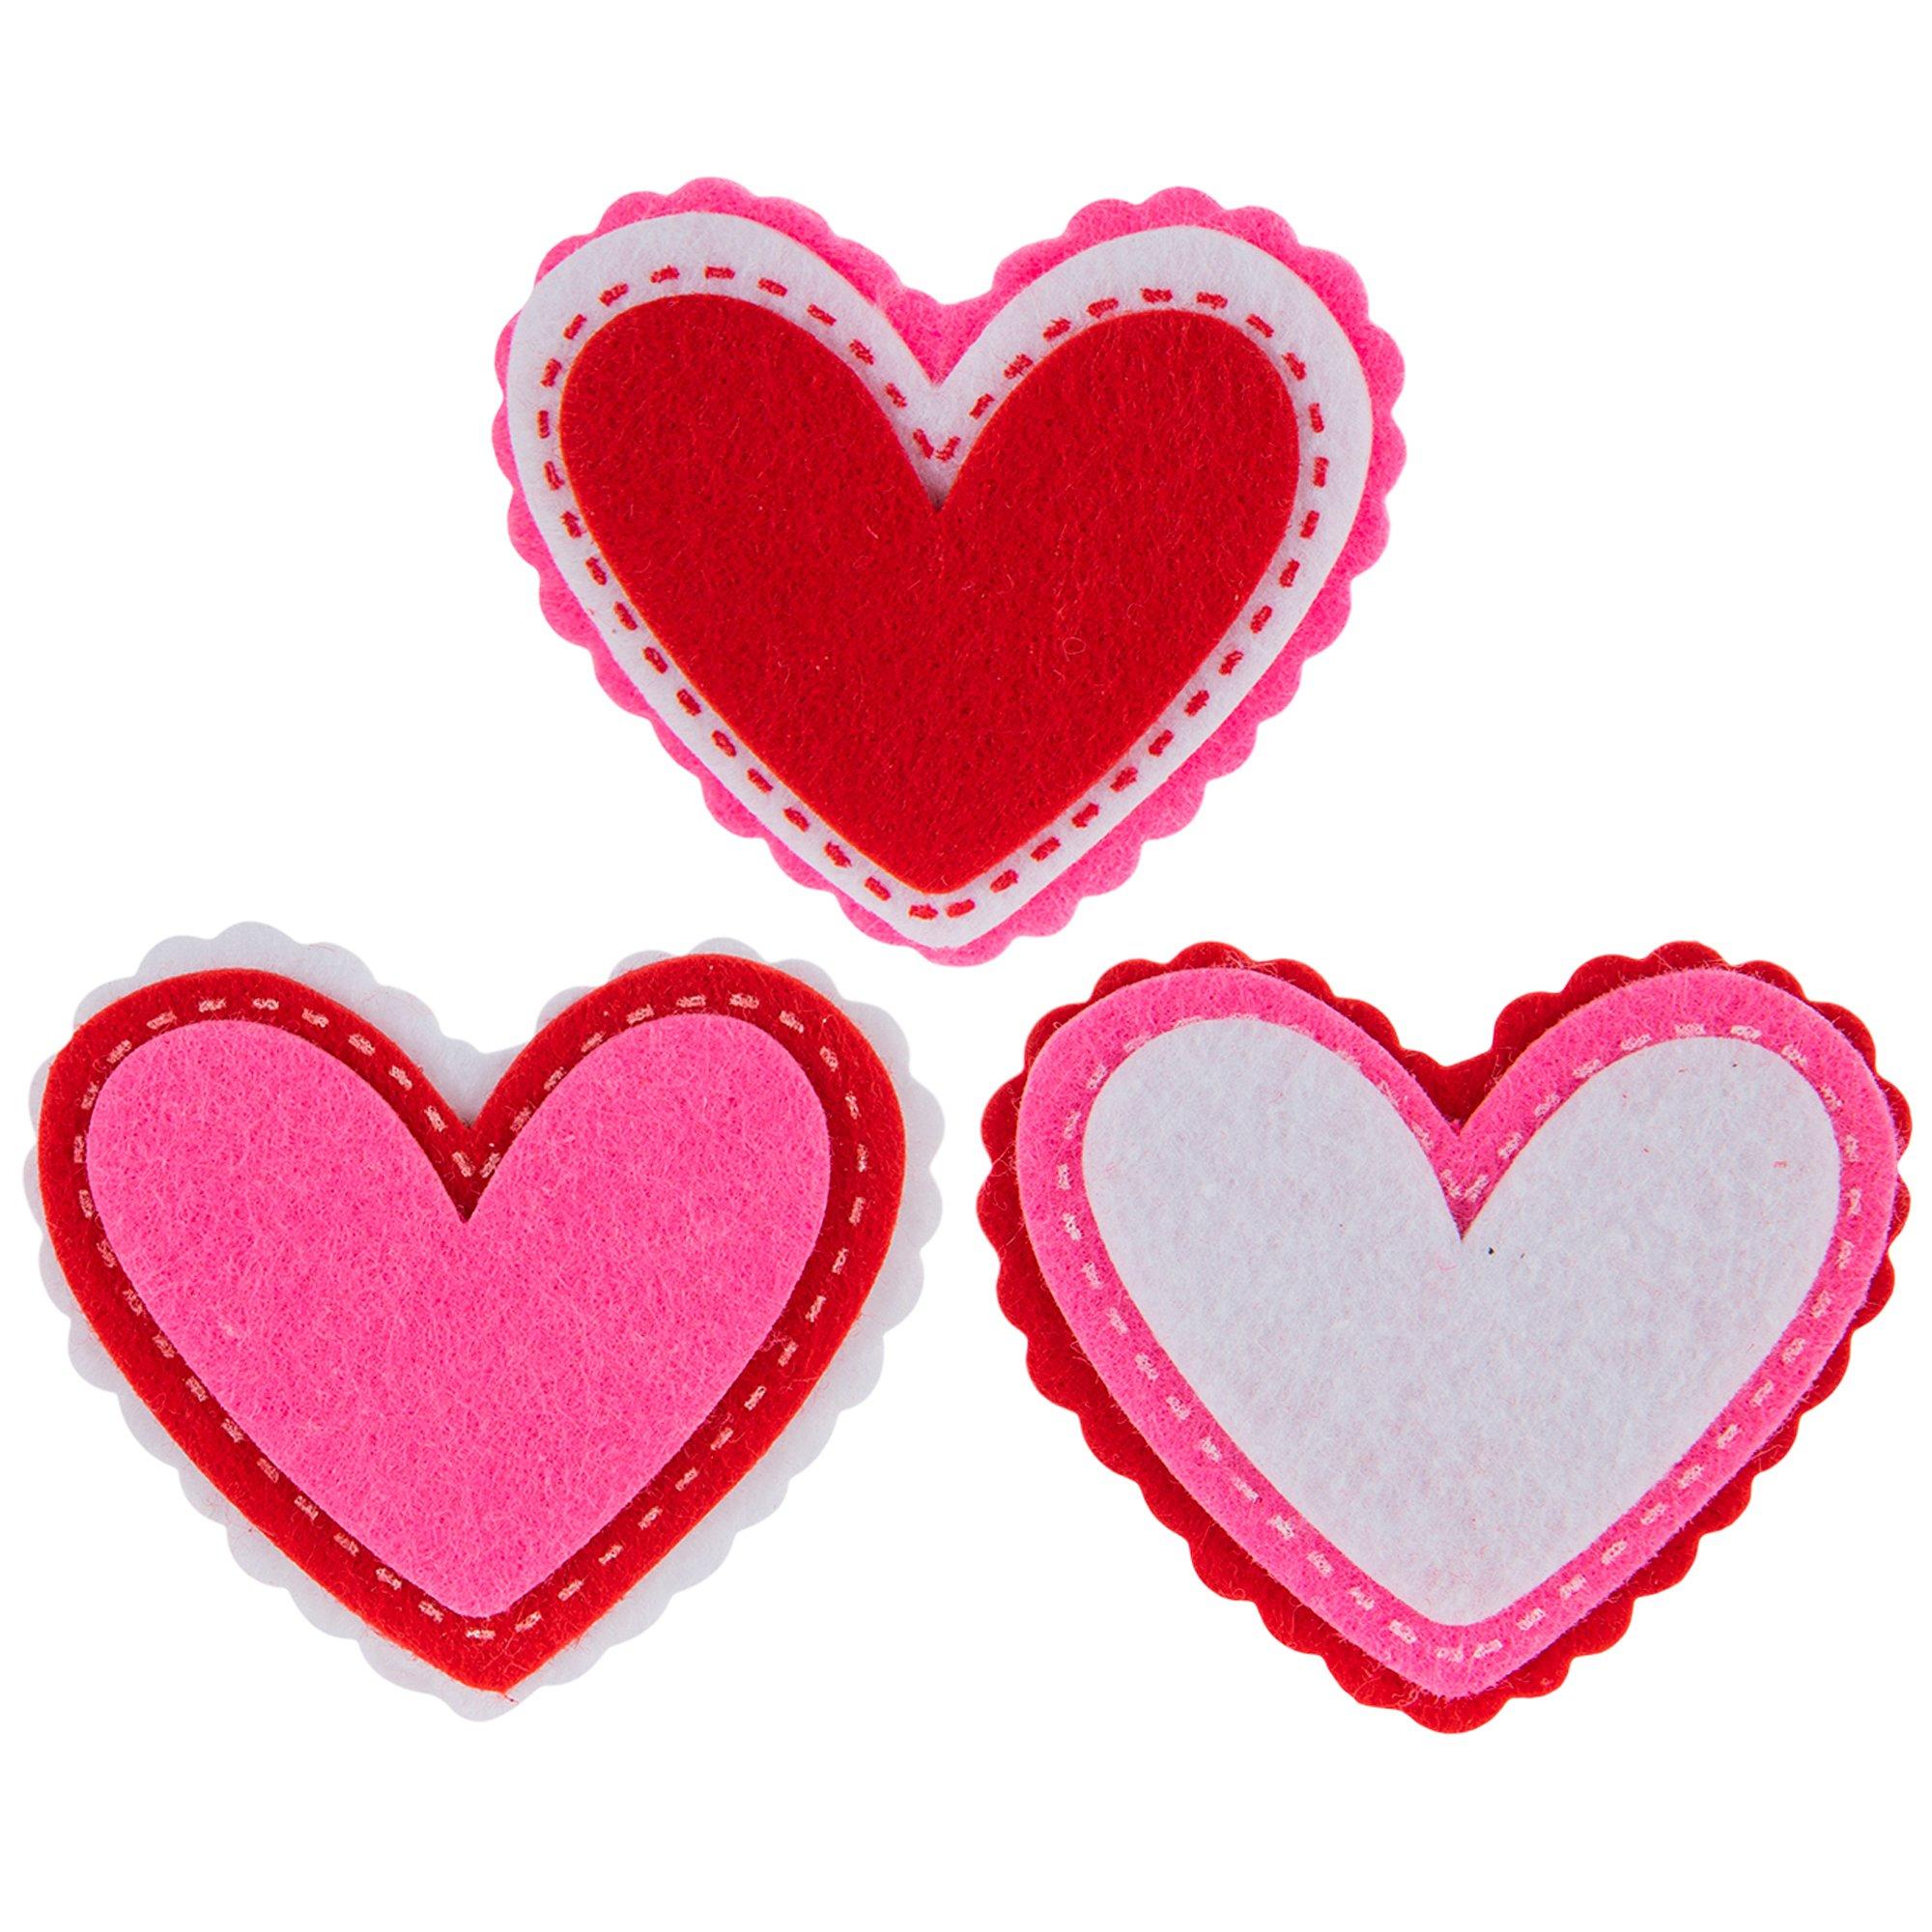 Patterned Glitter Foam Heart Stickers, Hobby Lobby